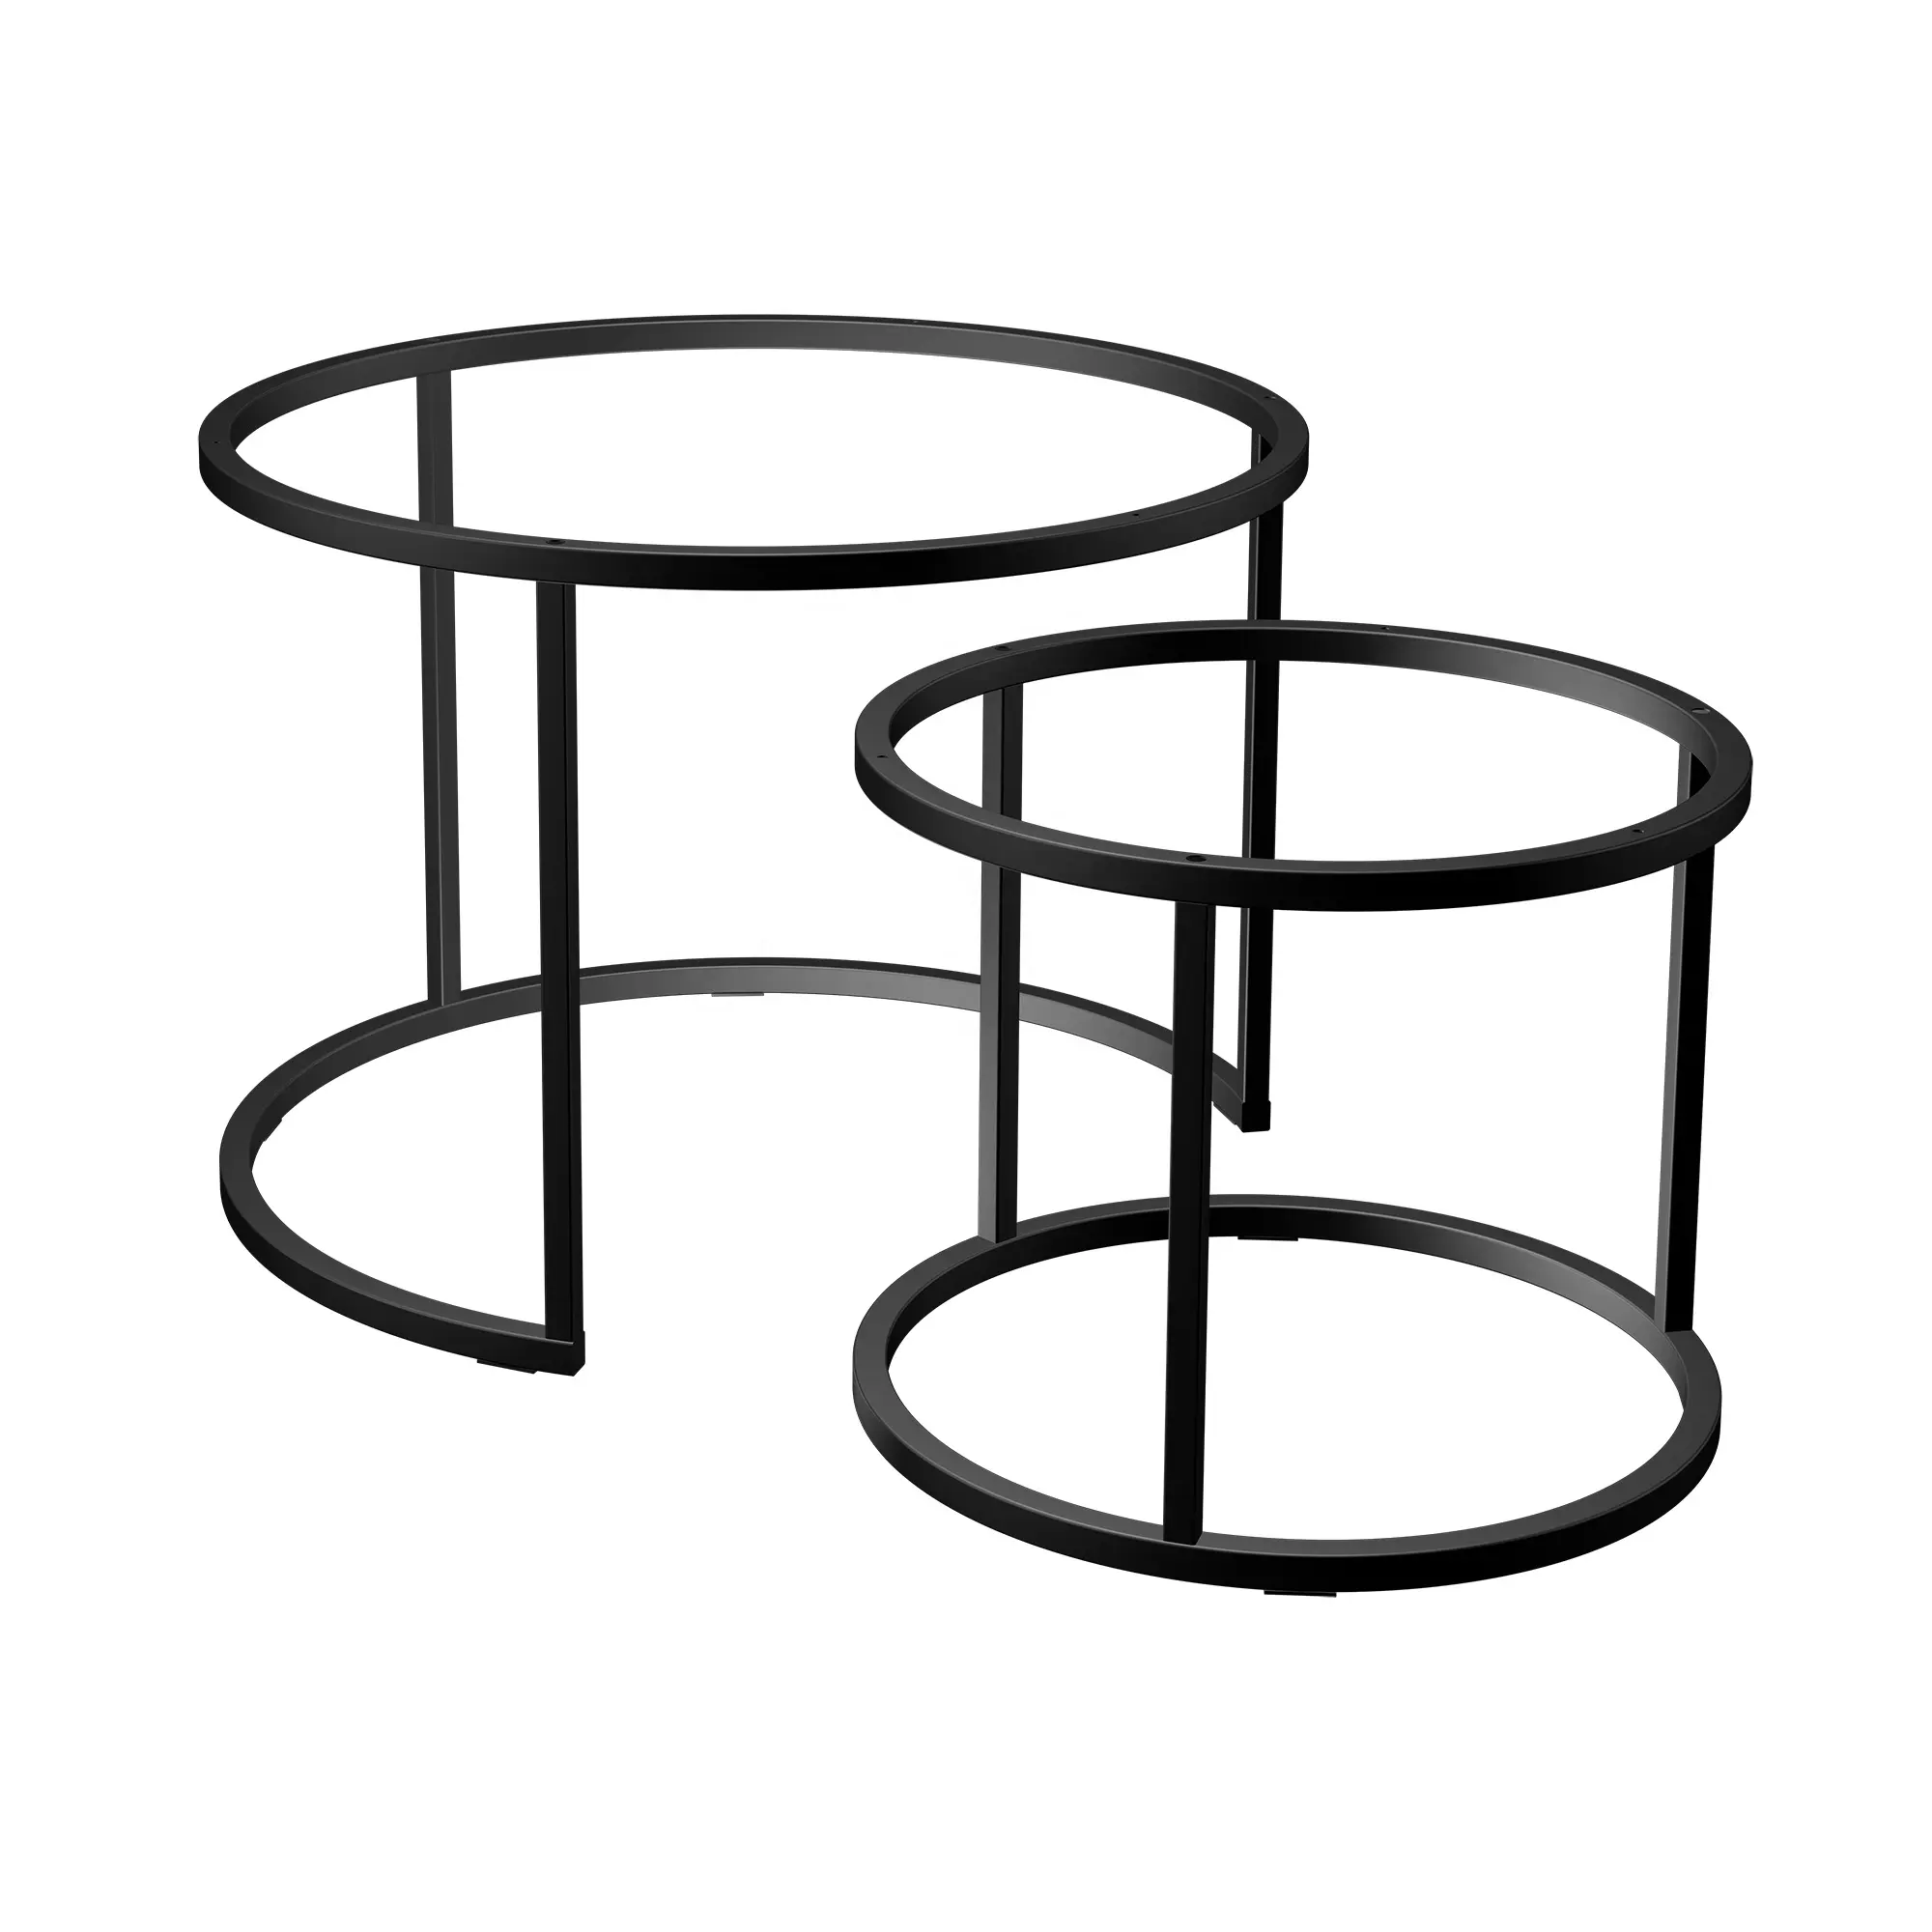 Cadre de table double en fonte de haute qualité pour tables basses pieds de table basse de forme ronde